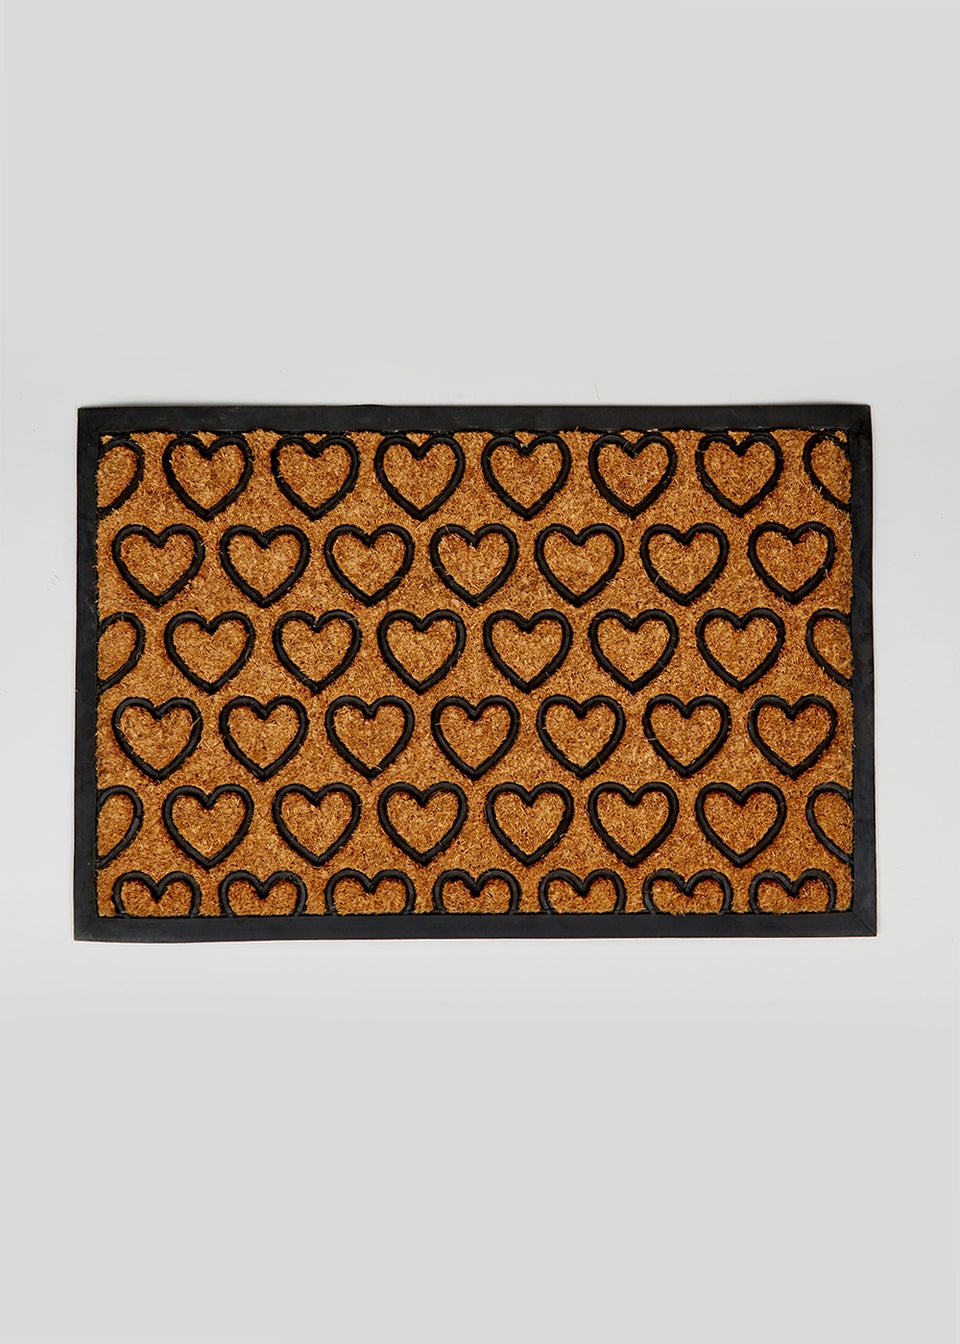 Heart Rubber & Coir Doormat (60cm x 40cm)